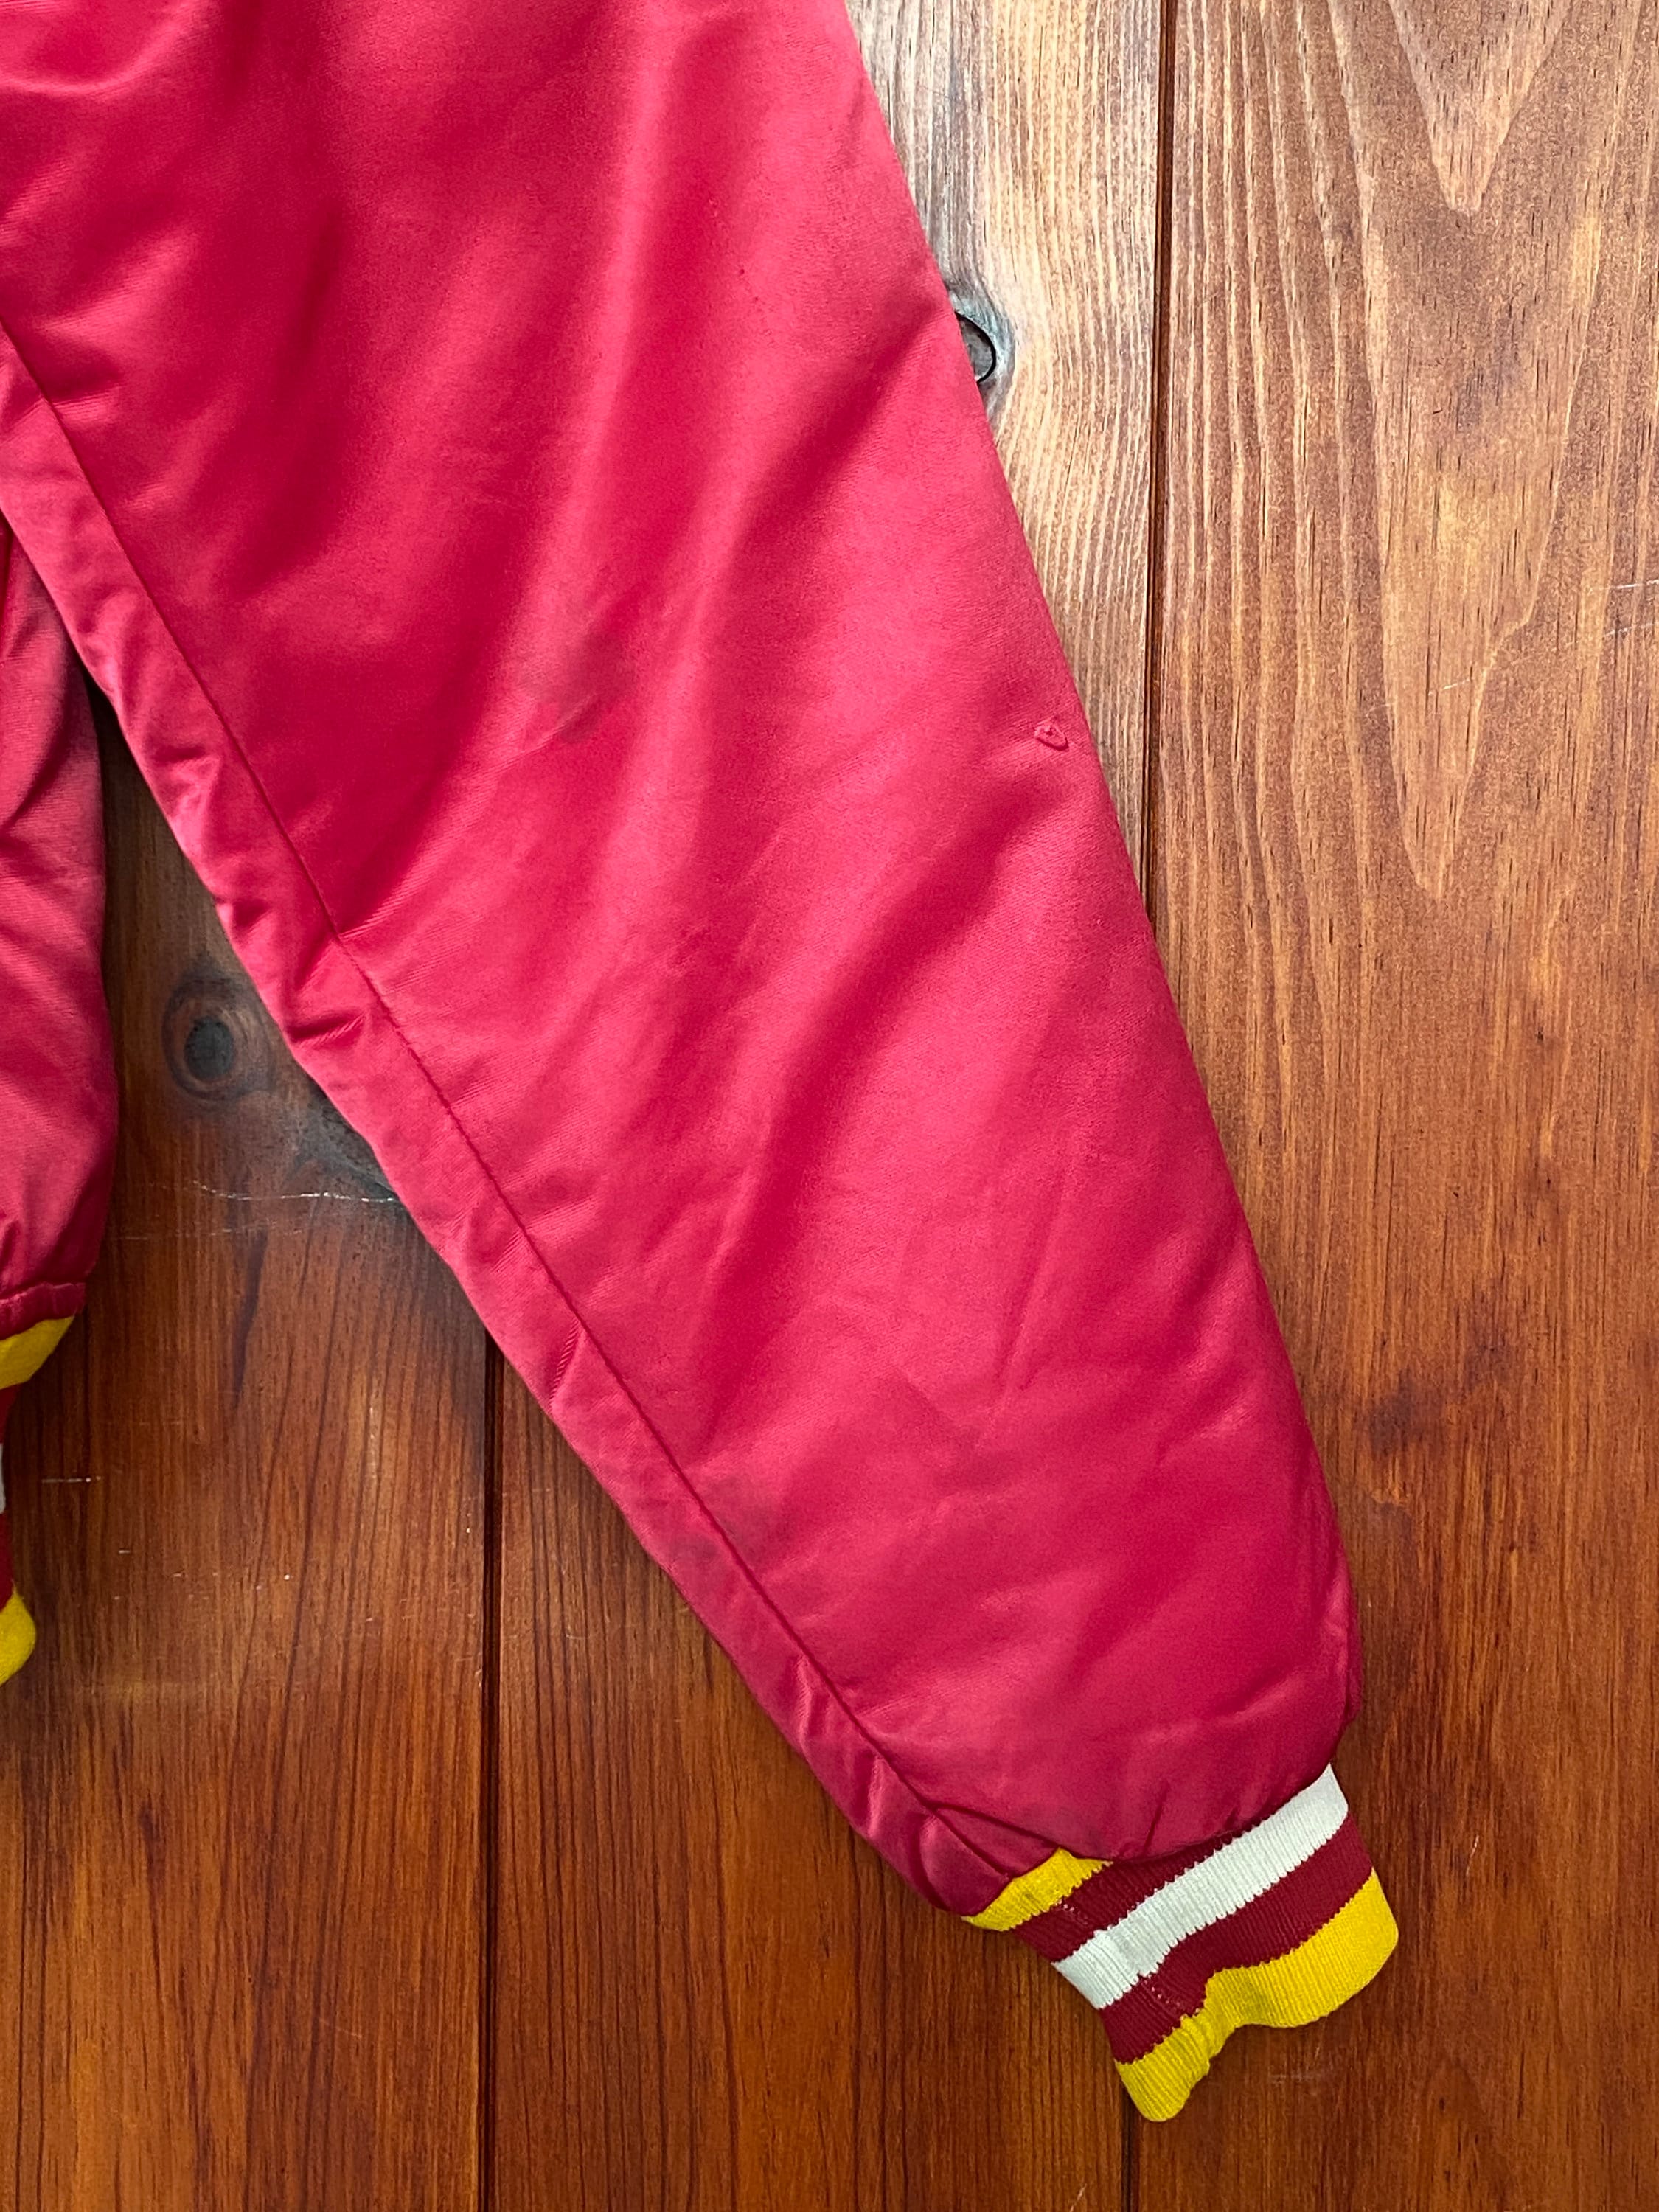 Washington Redskins Vintage 80's Made in USA Quilt Lined Starter